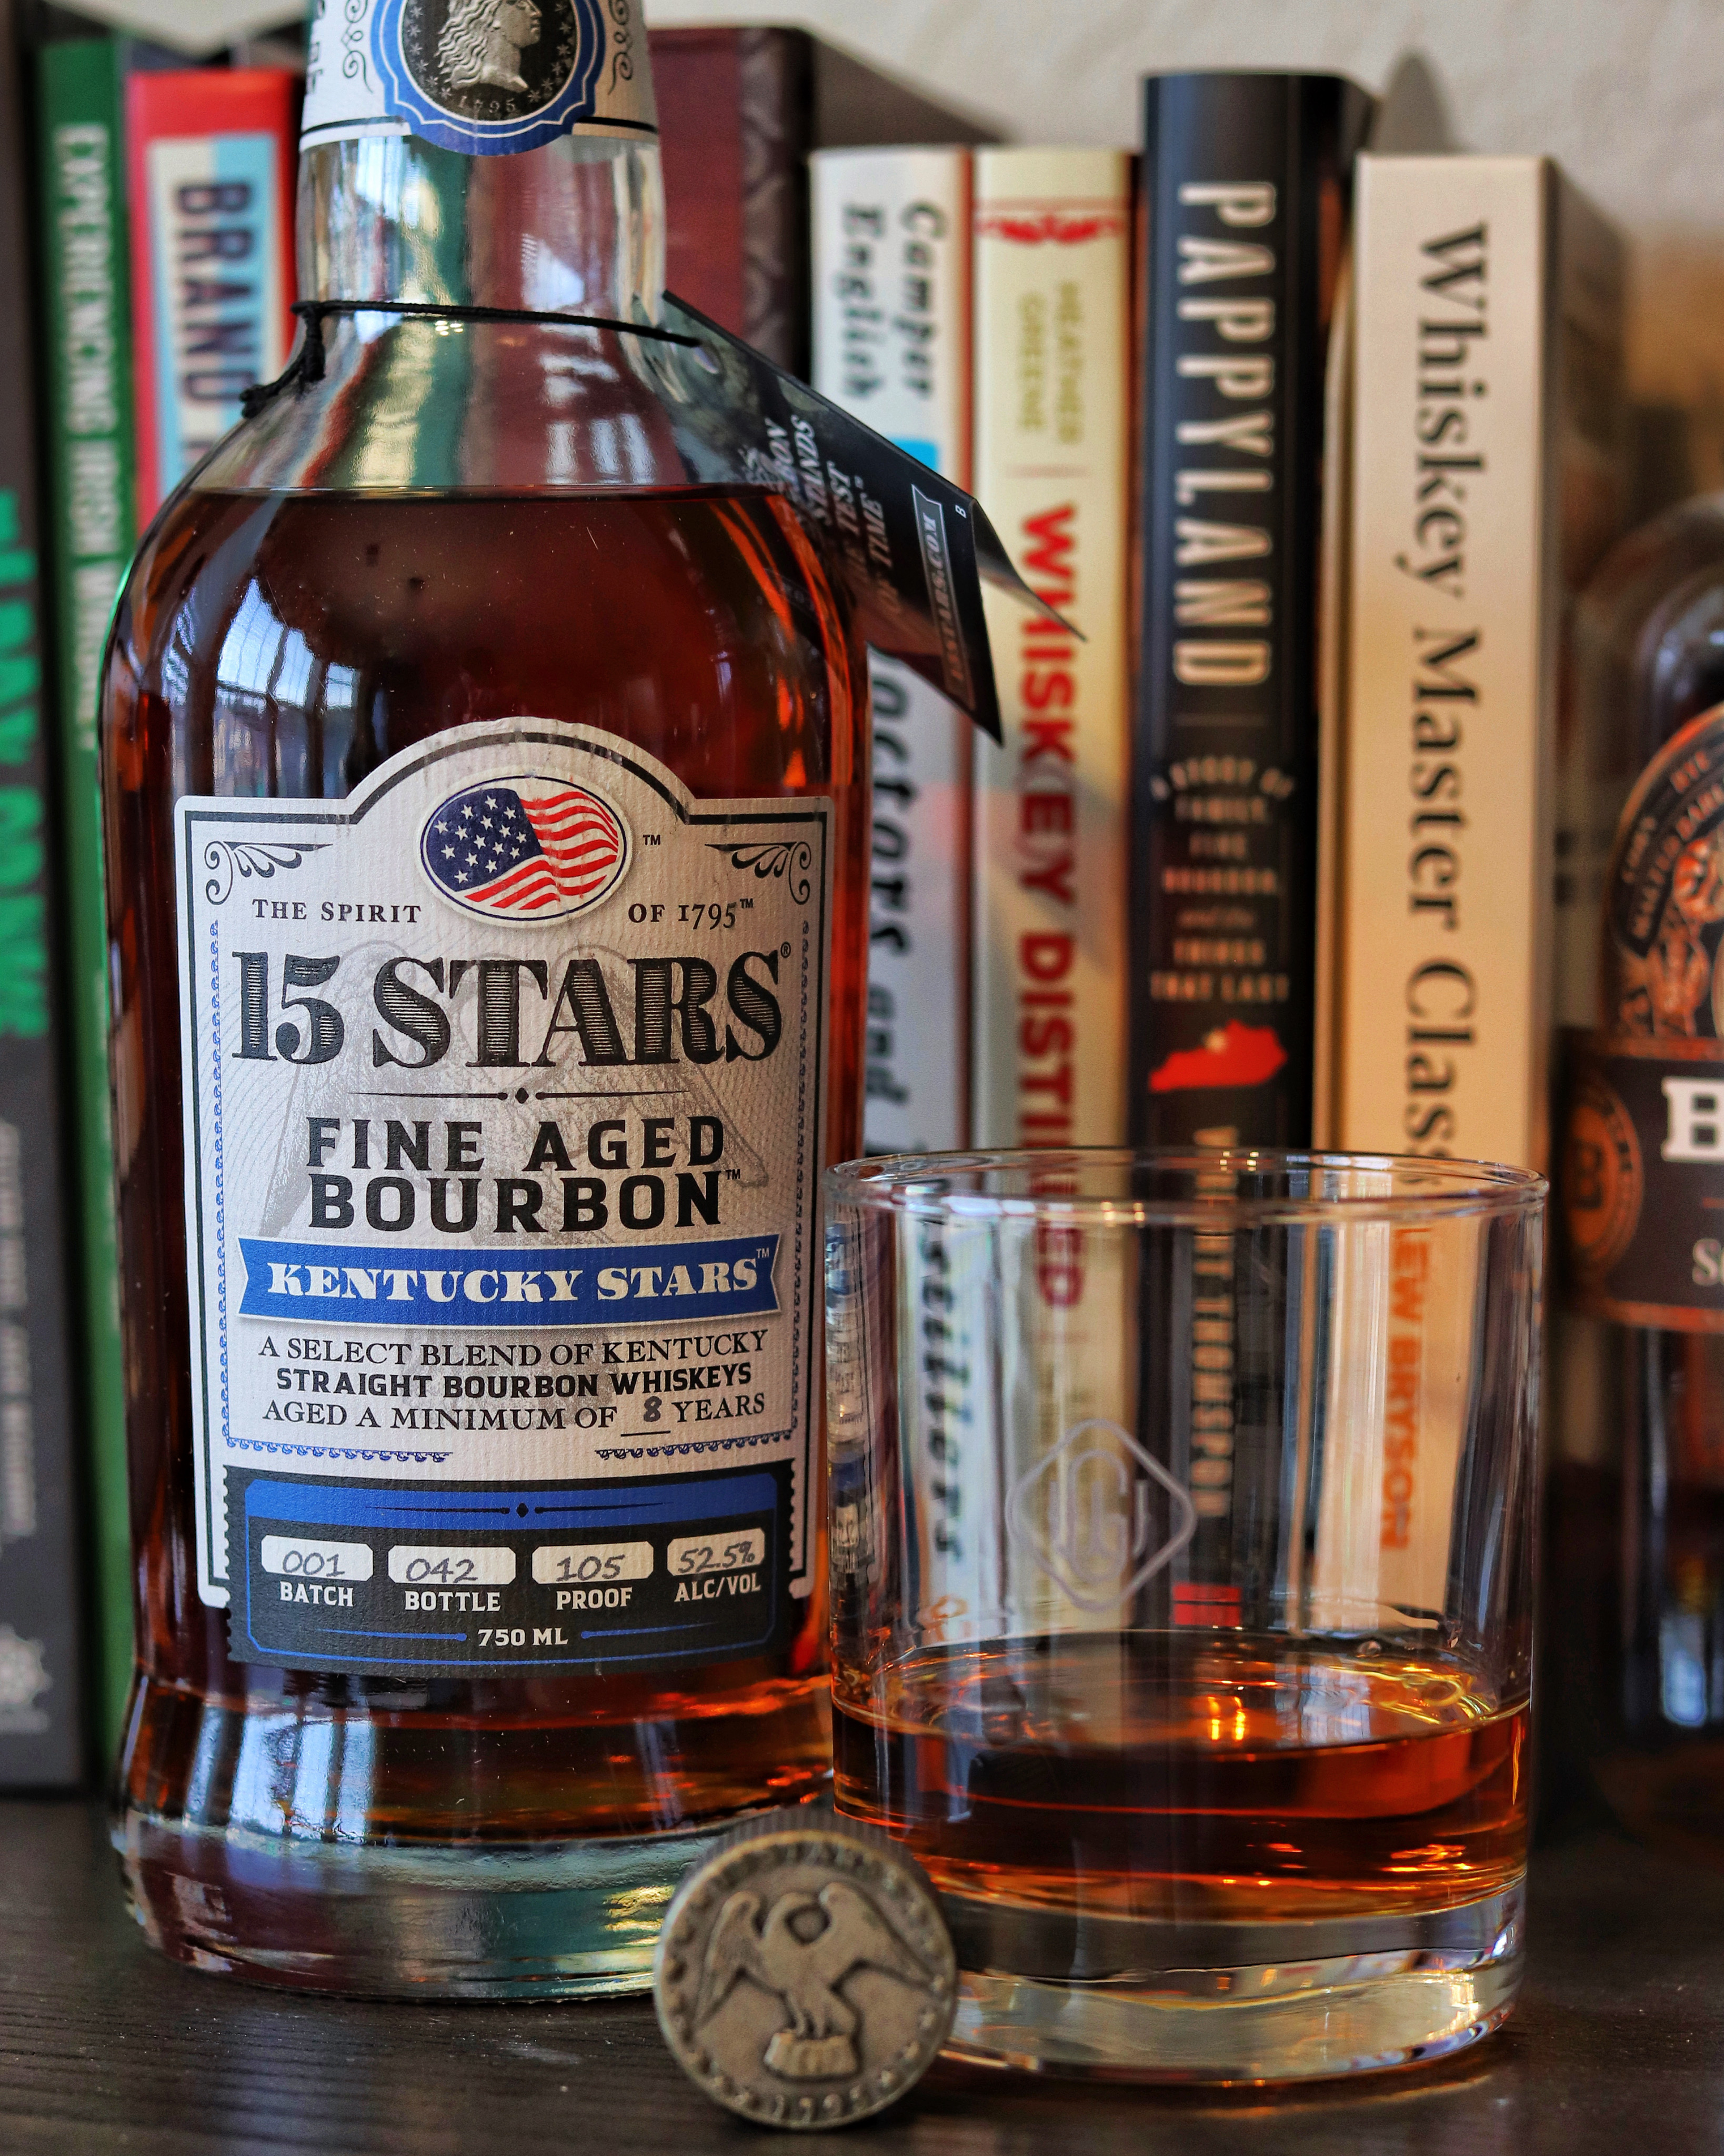 15 STARS Kentucky Stars Bourbon Review